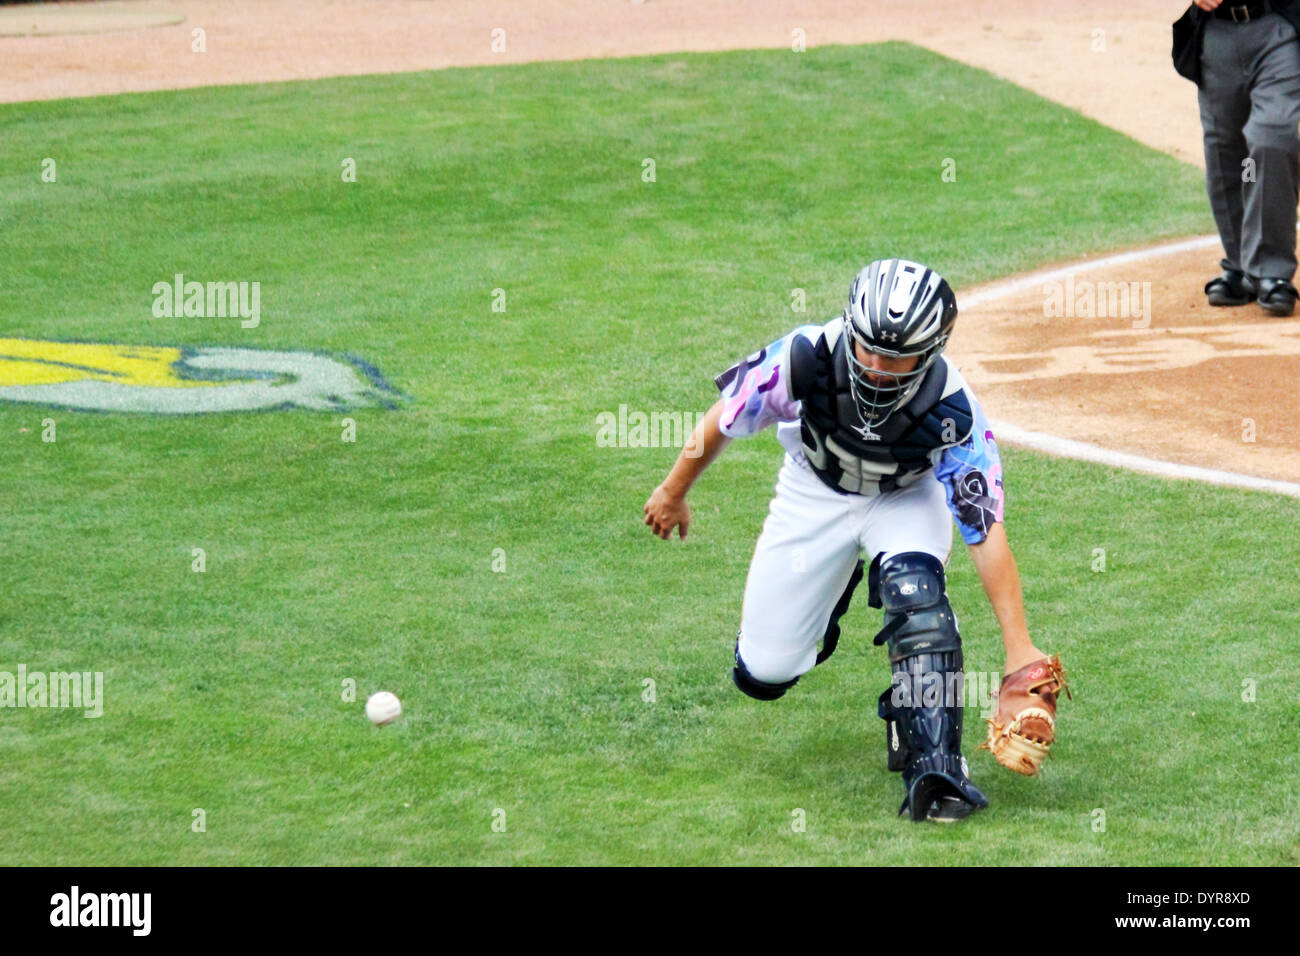 Eine Baseball-Catcher jagt einen Wild Pitch. Stockfoto